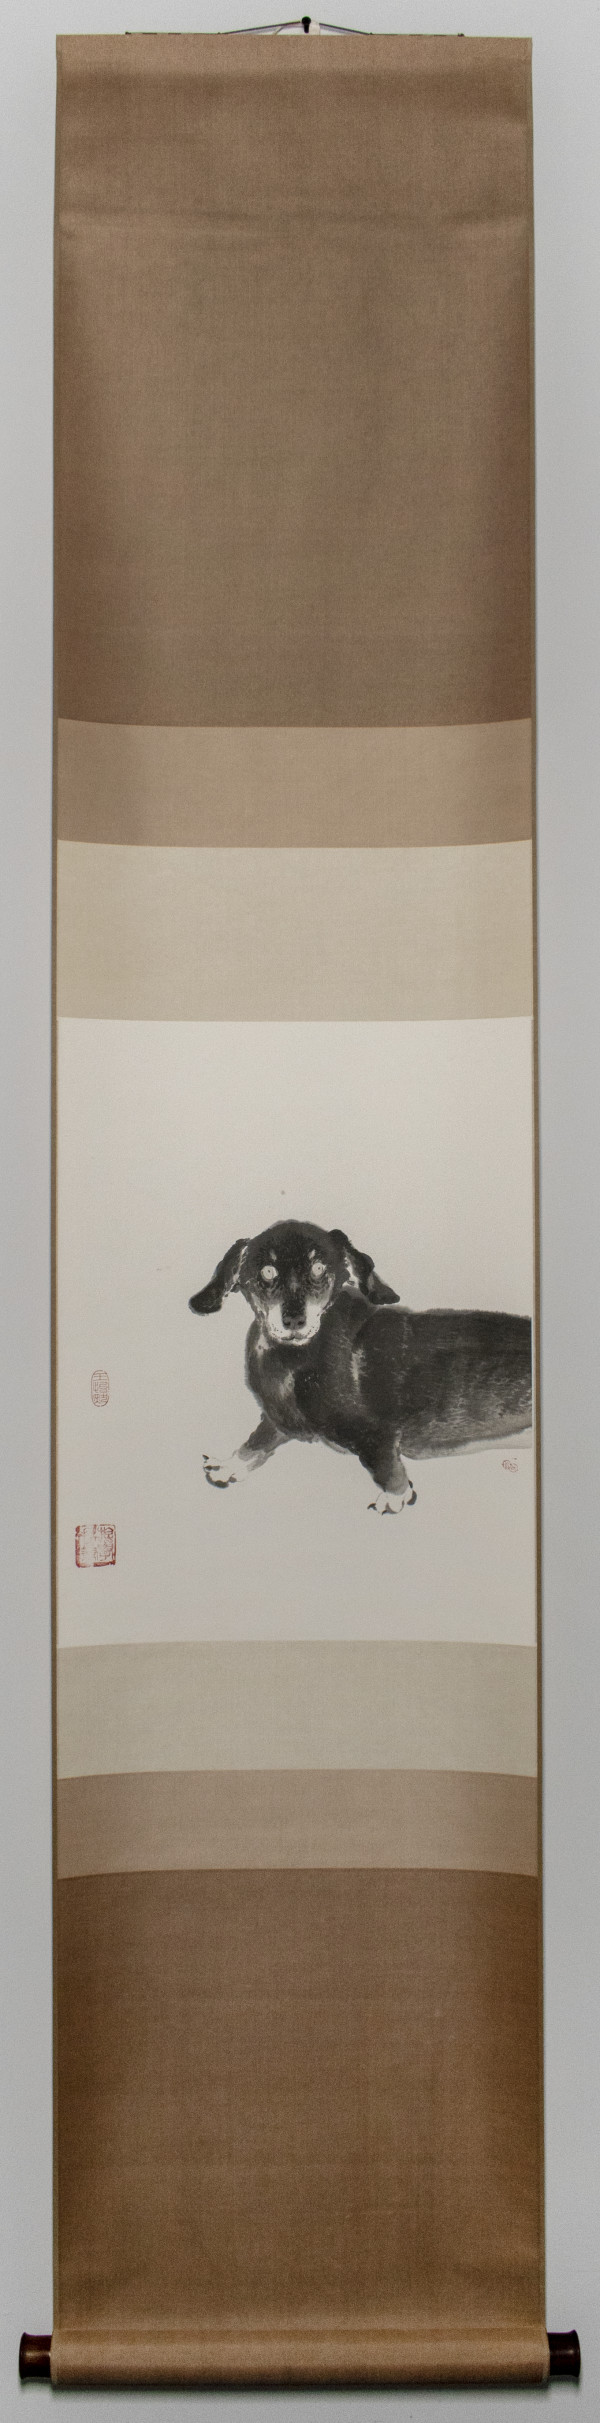 犬童丸 Juvenile Dog by 王怡然 WANG Yi Jan